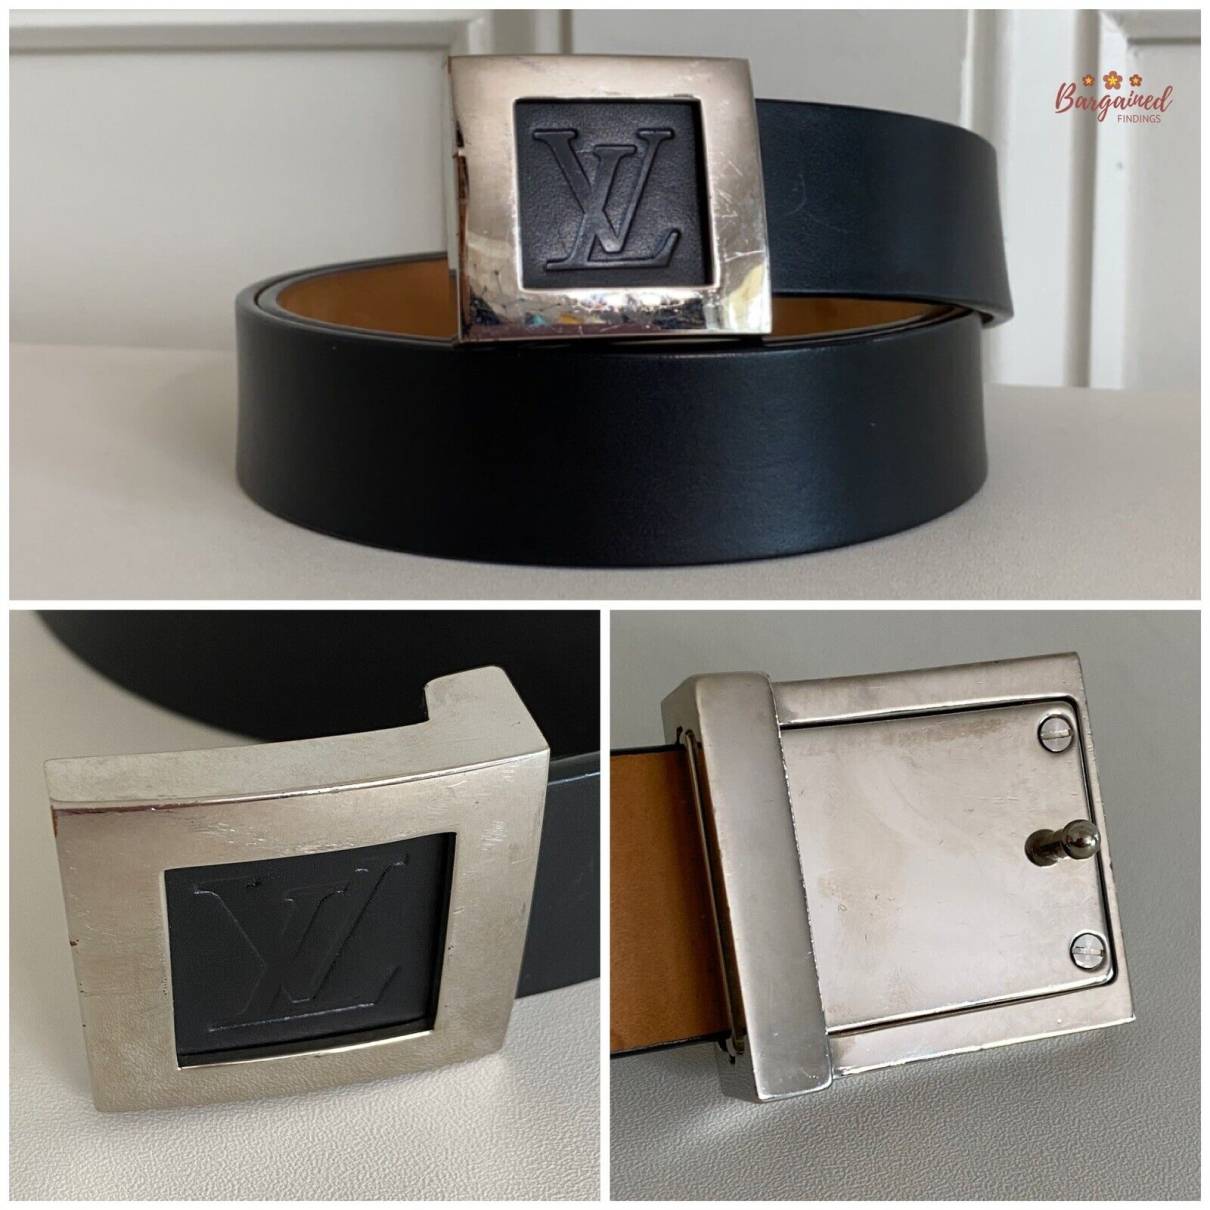 Louis Vuitton Men's Plain Leather Belt